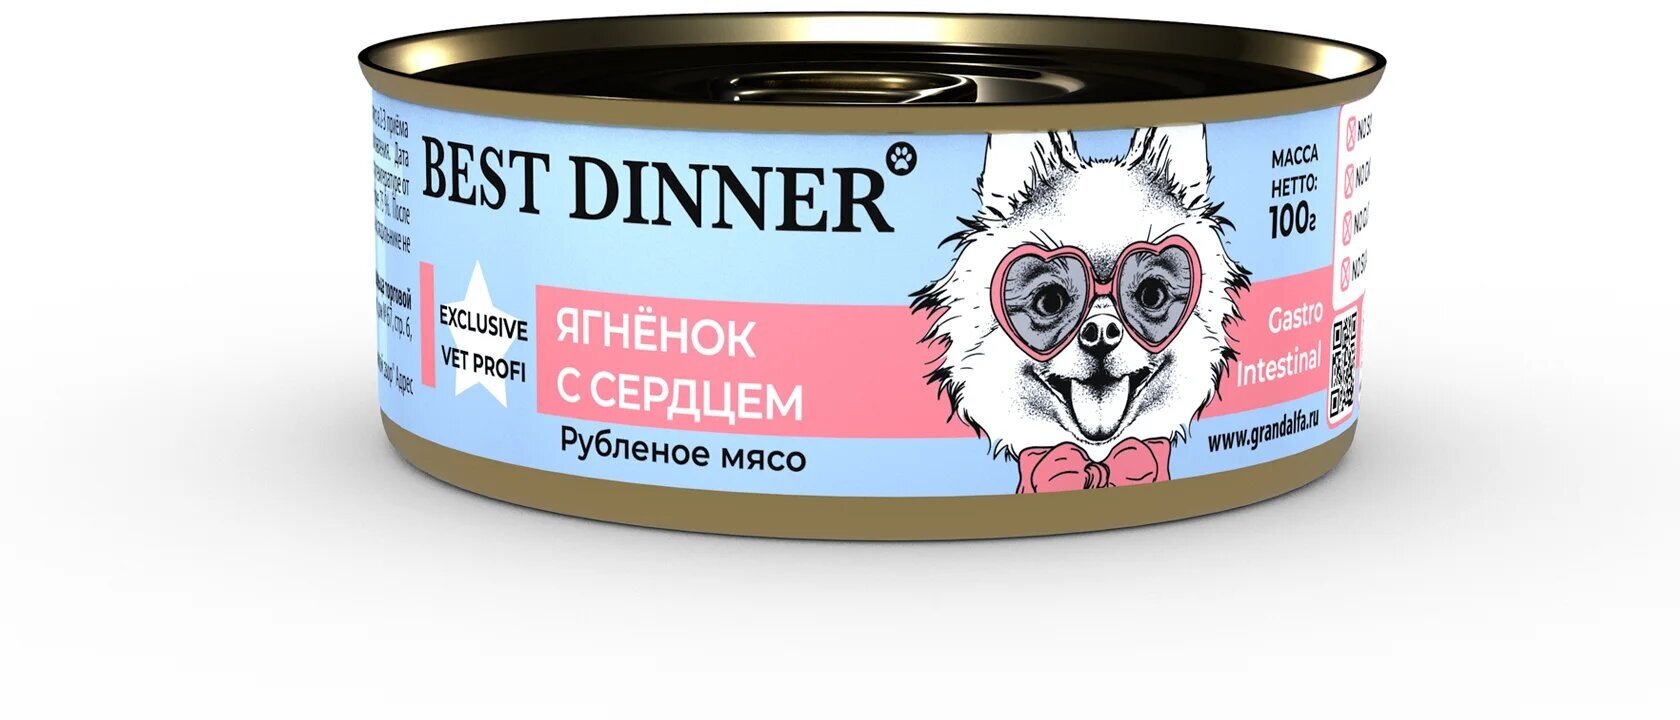 Best Dinner Vet Profi Gastro Intestinal Exclusive 100г ягненок с сердцем консервы для собак